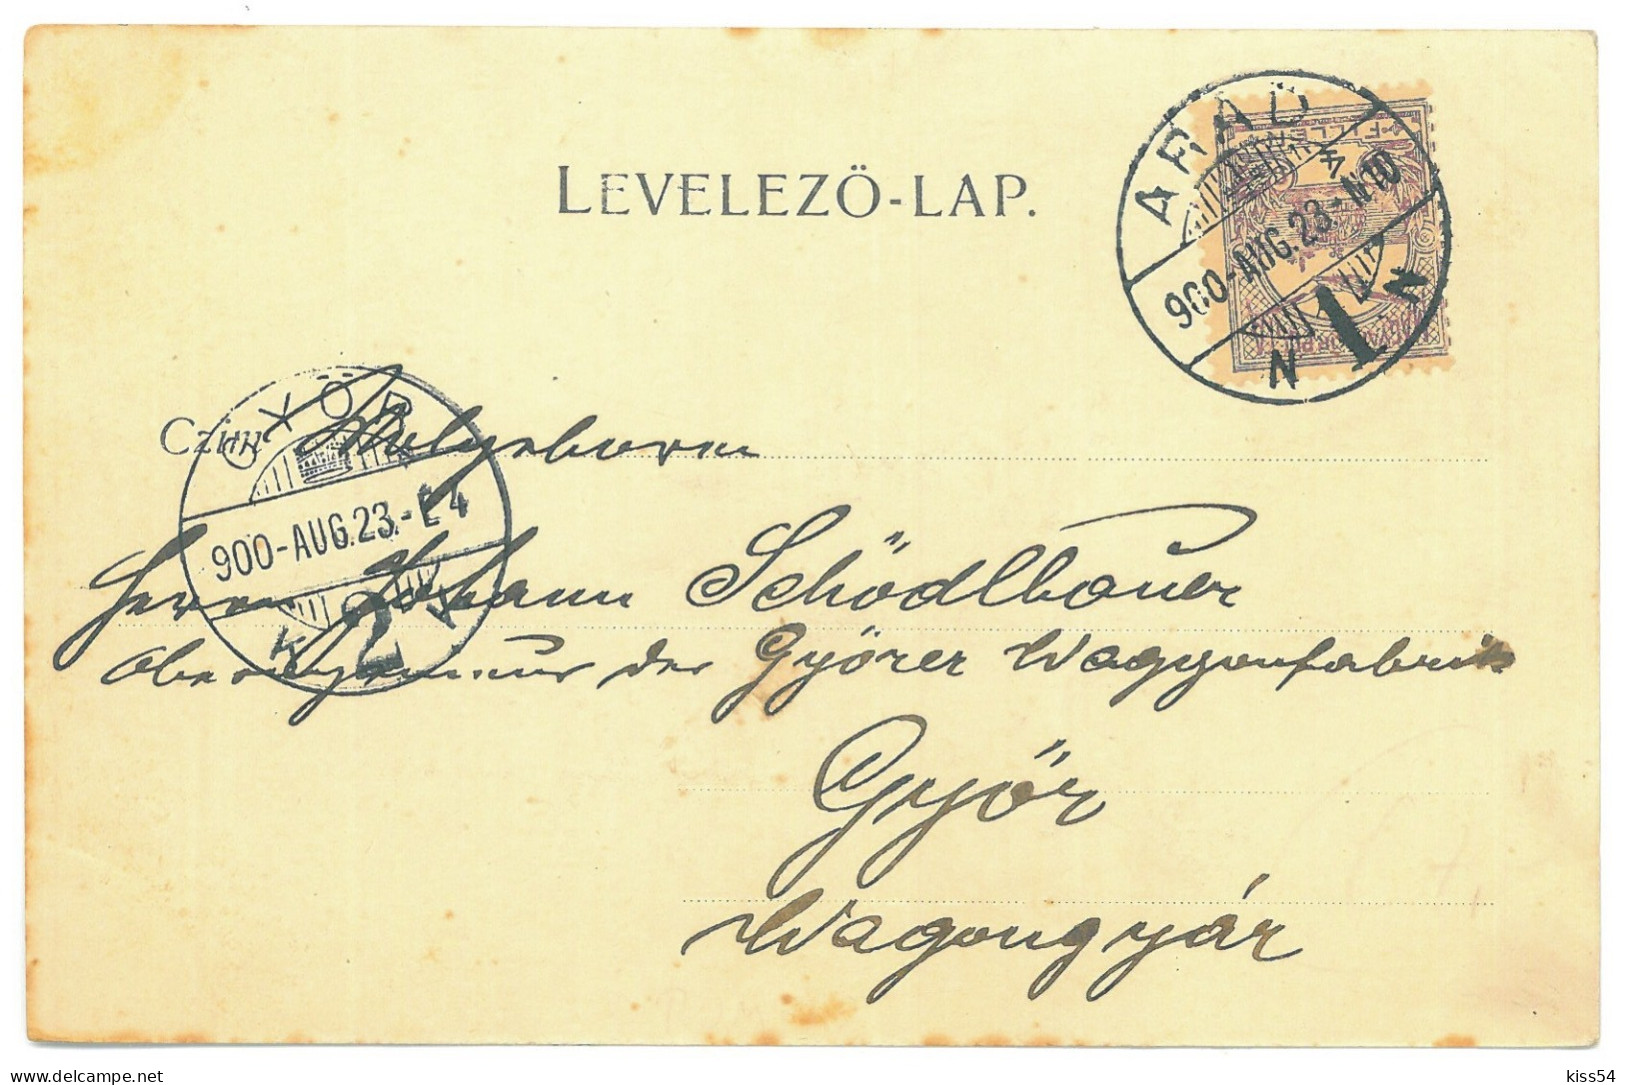 RO 85 - 25098 ARAD, Litho, Romania - Old Postcard - Used - 1900 - Rumania